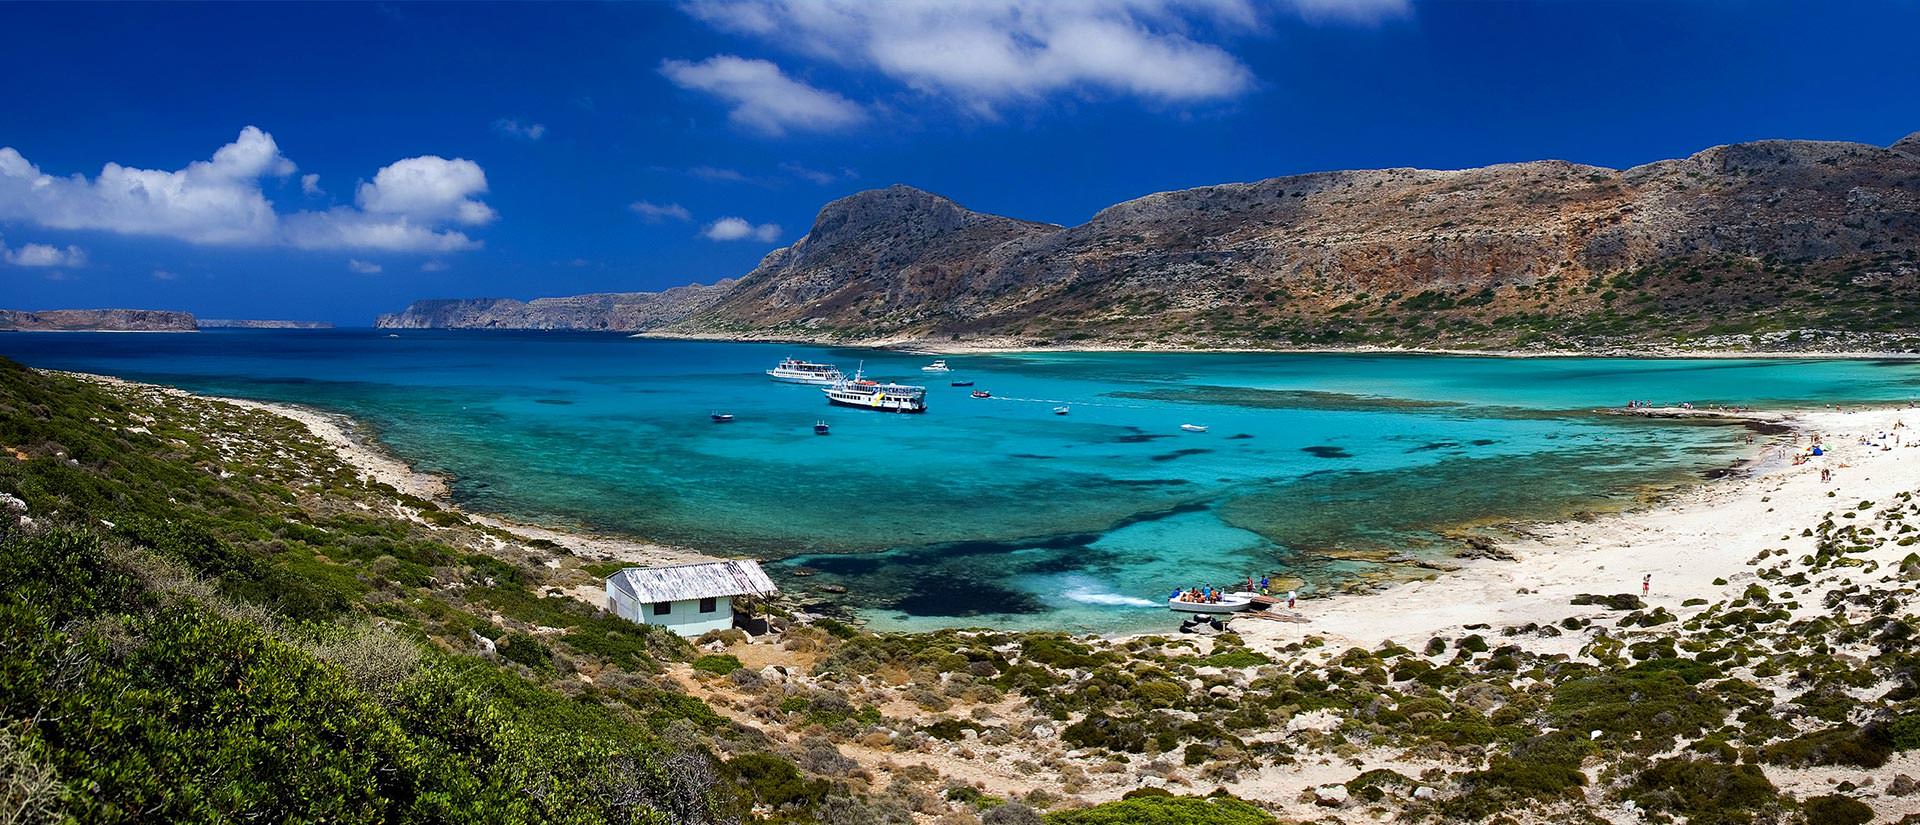 ספארי ימי באיים הסרוניים - 8 ימים - אודיסיאה יוונית עם צלילה, שנירקול ועוד